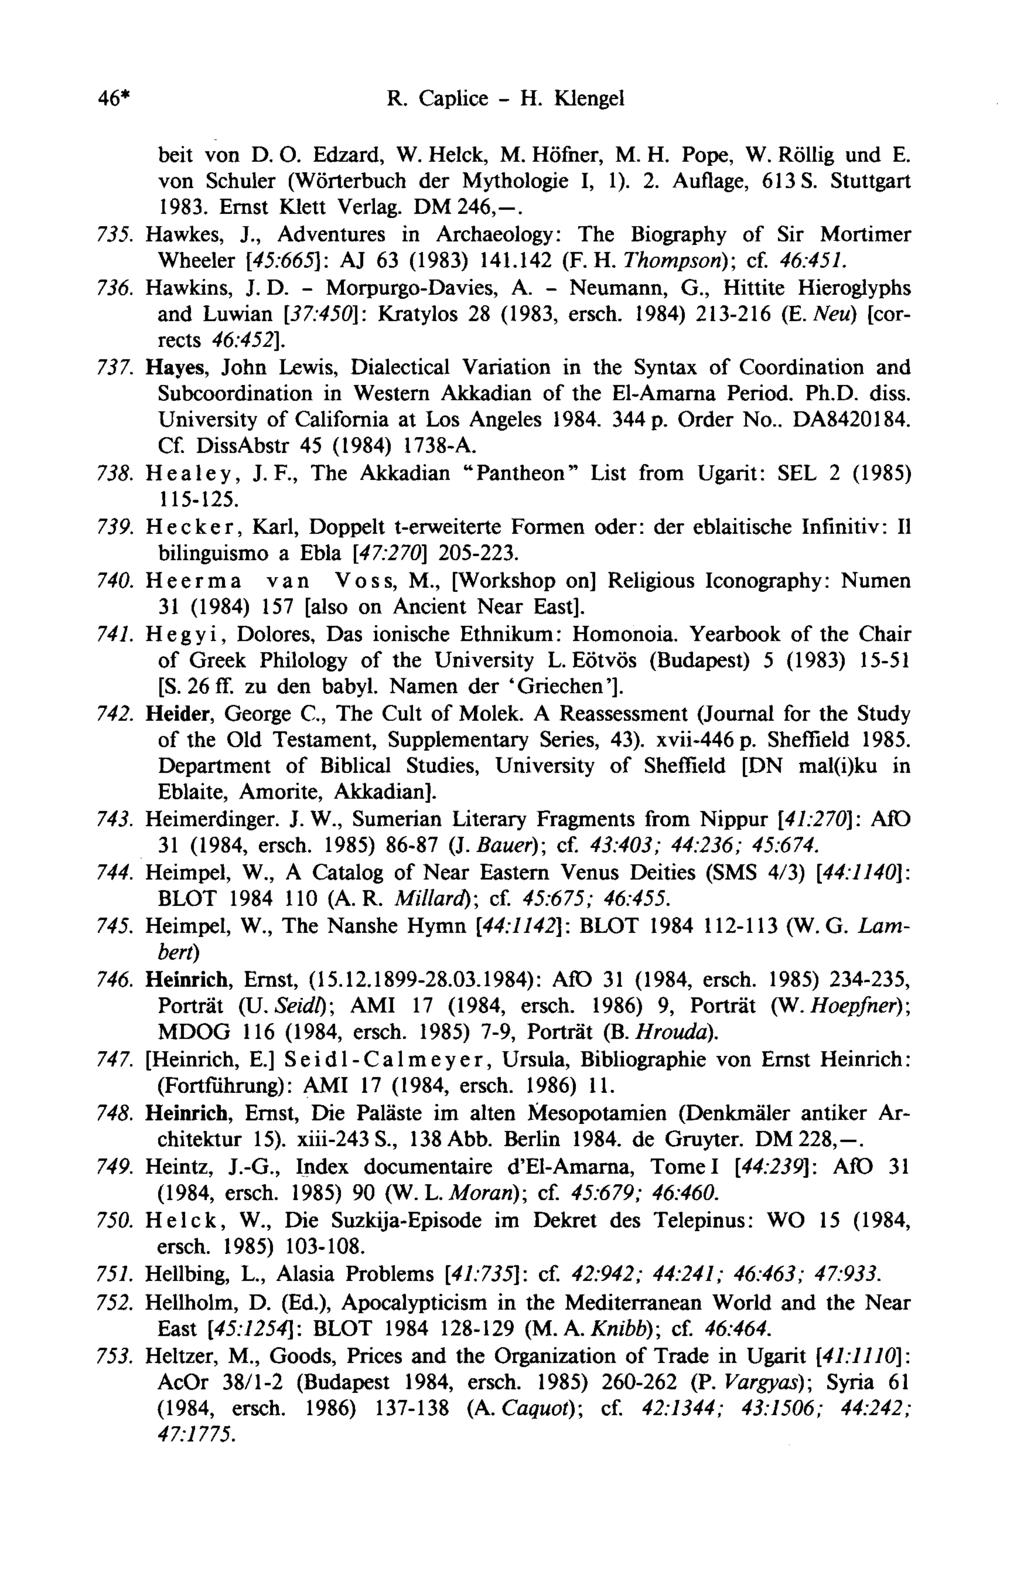 46* R. Caplice - H. Klengel beit von D. O. Edzard, W. Helck, M. Höfner, M. H. Pope, W. Röllig und E. von Schuler (Wörterbuch der Mythologie I, 1). 2. Auflage, 613 S. Stuttgart 1983.